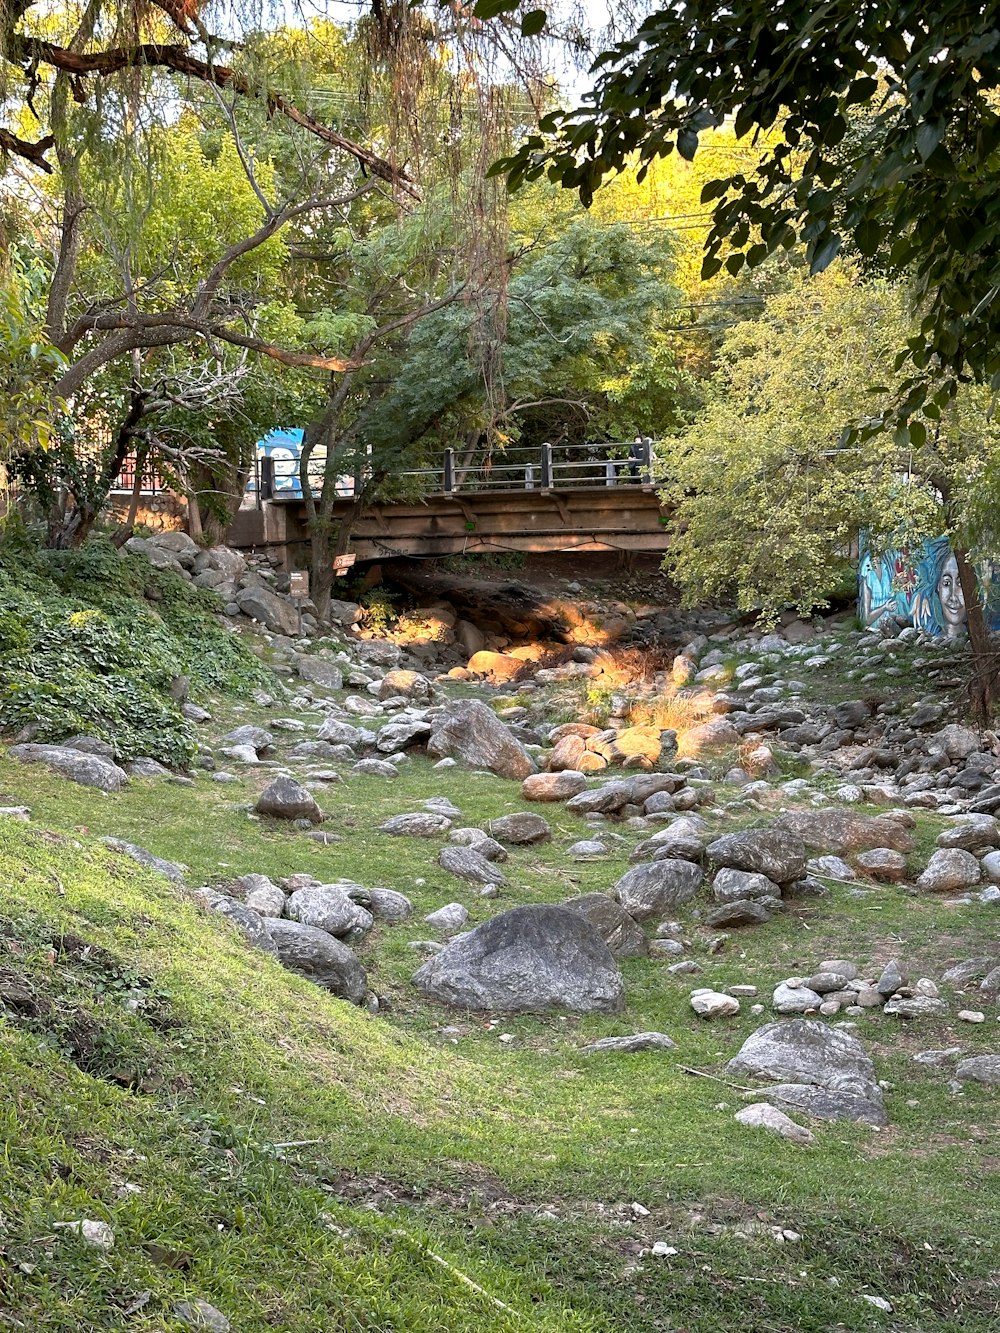 a small bridge over a stream in a park